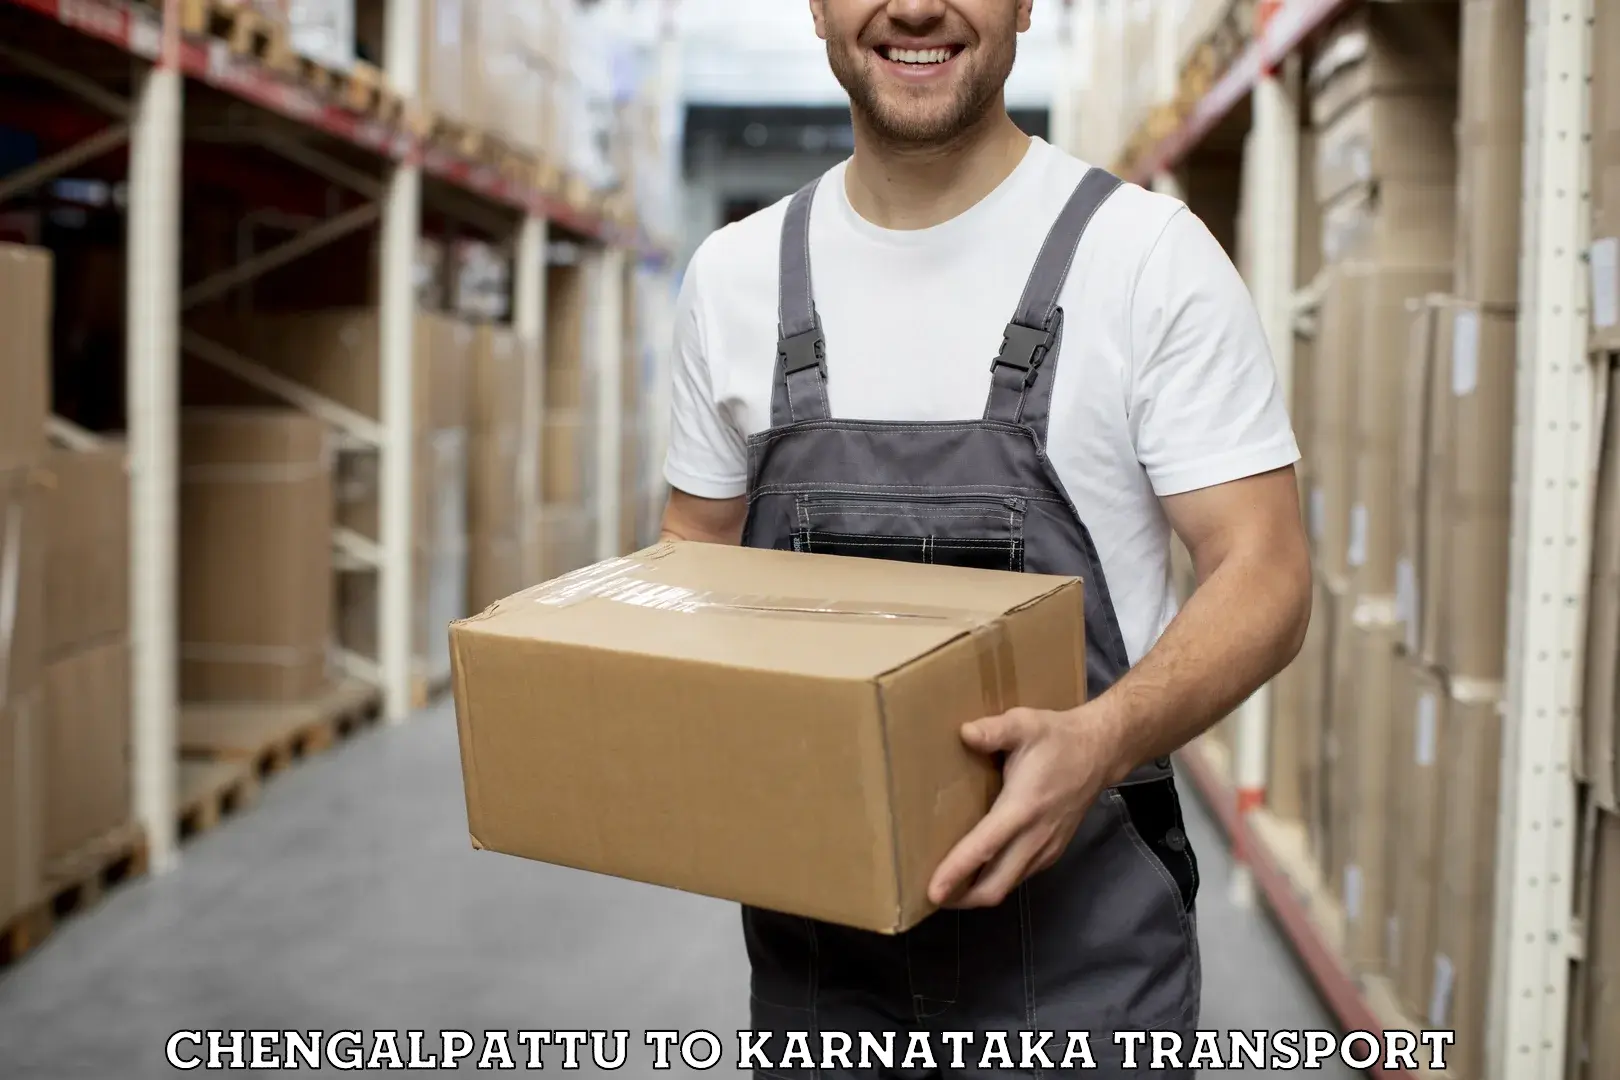 Truck transport companies in India Chengalpattu to Karnataka